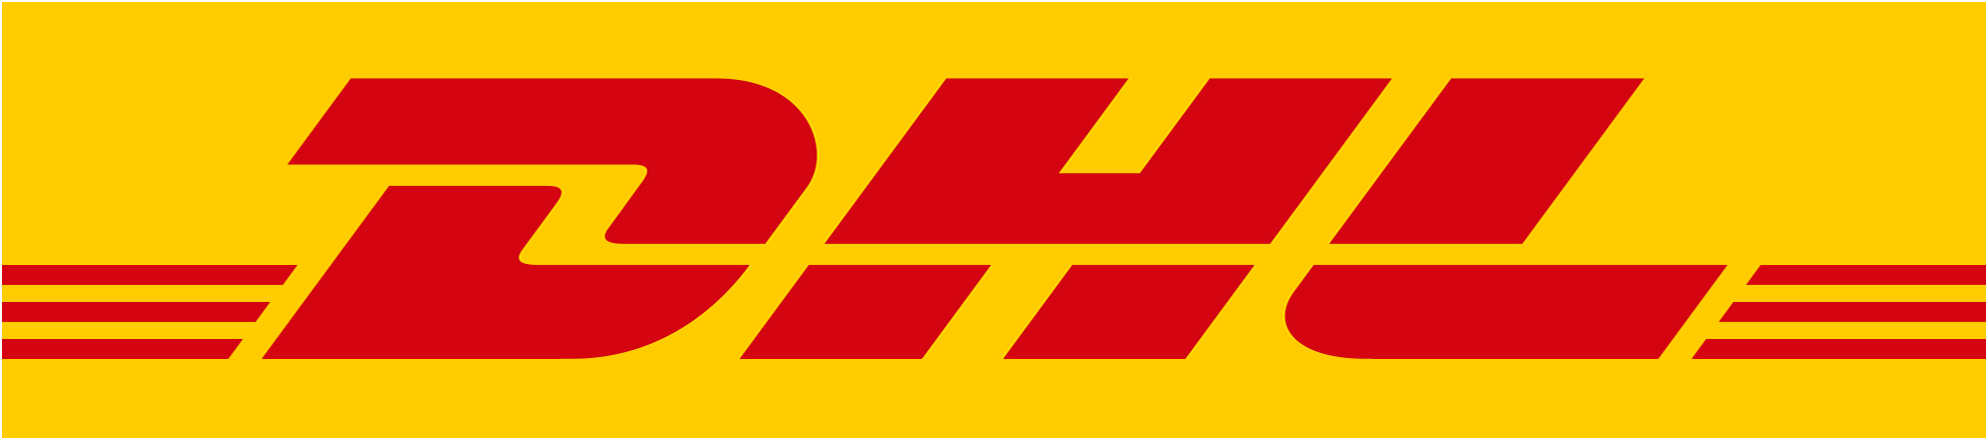 logo-dhl.png